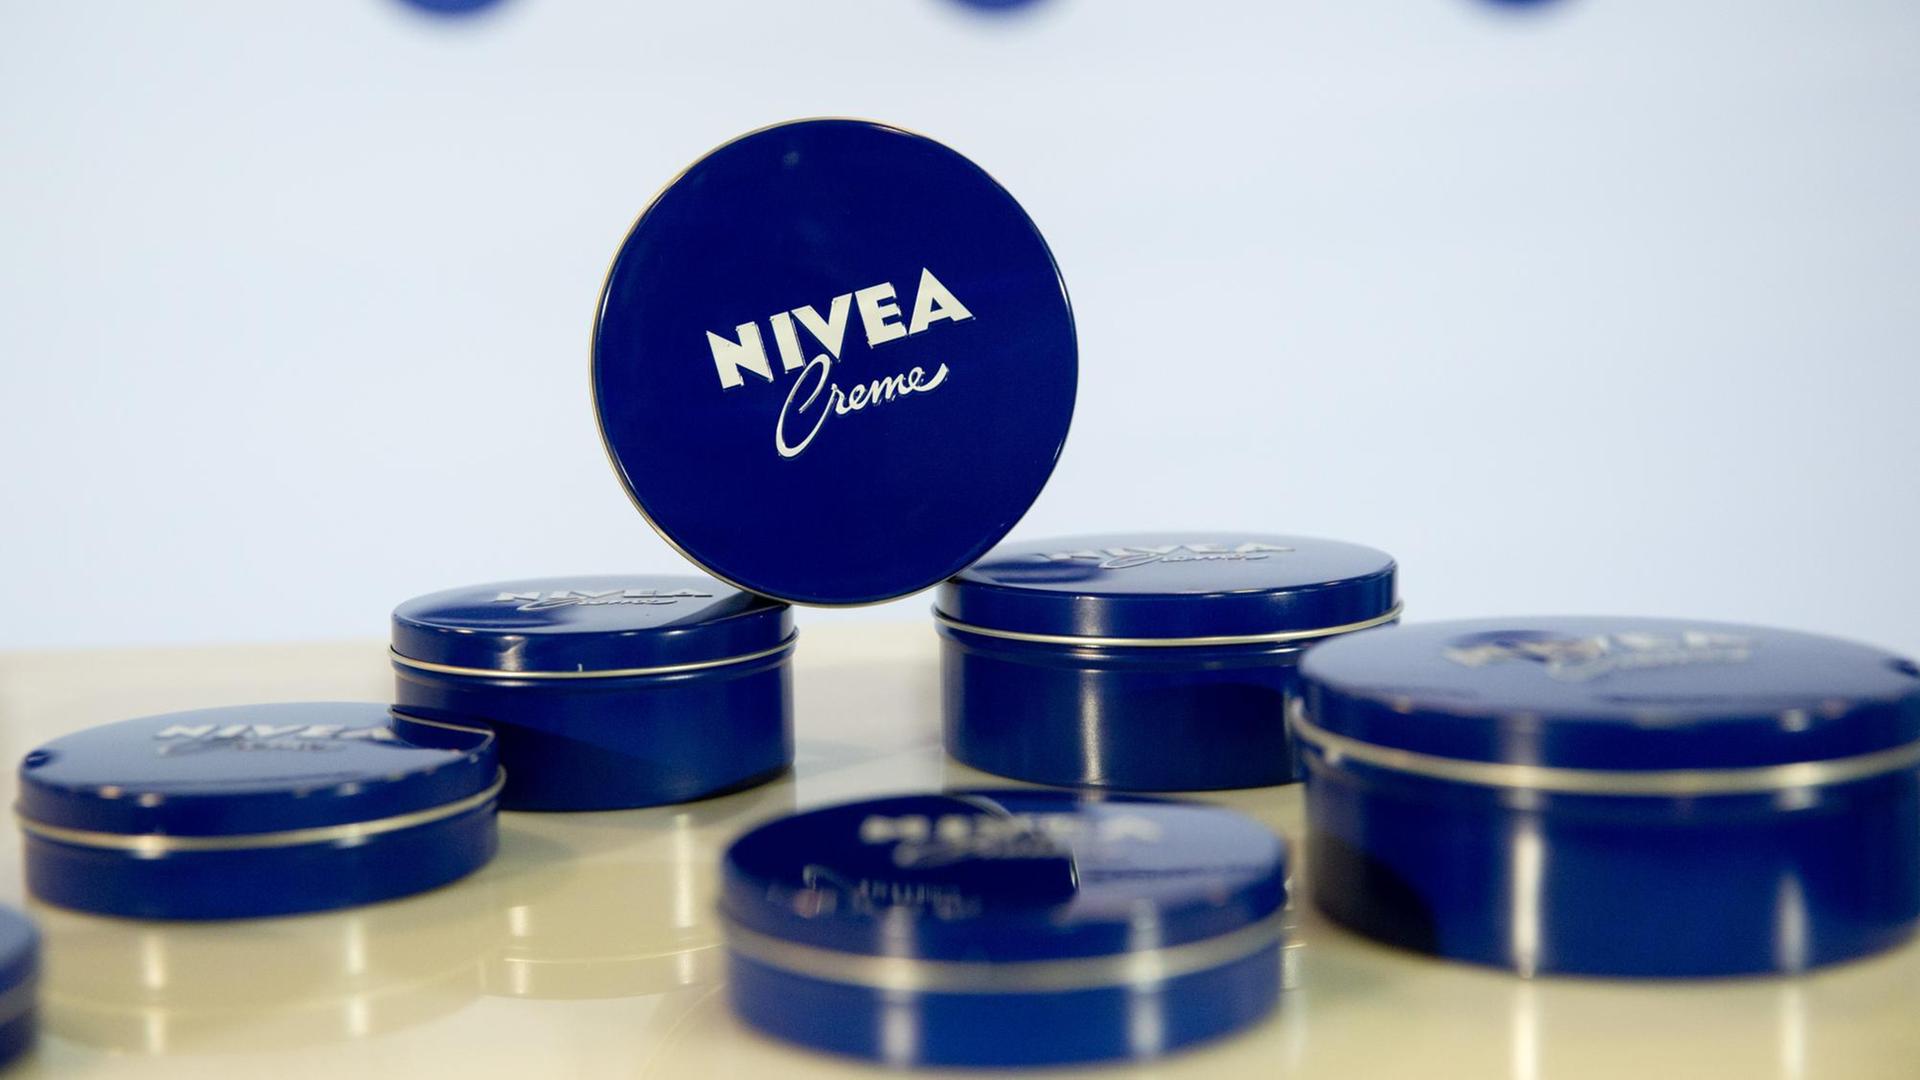 Cremedosen der Marke Nivea liegen auf einem Tisch